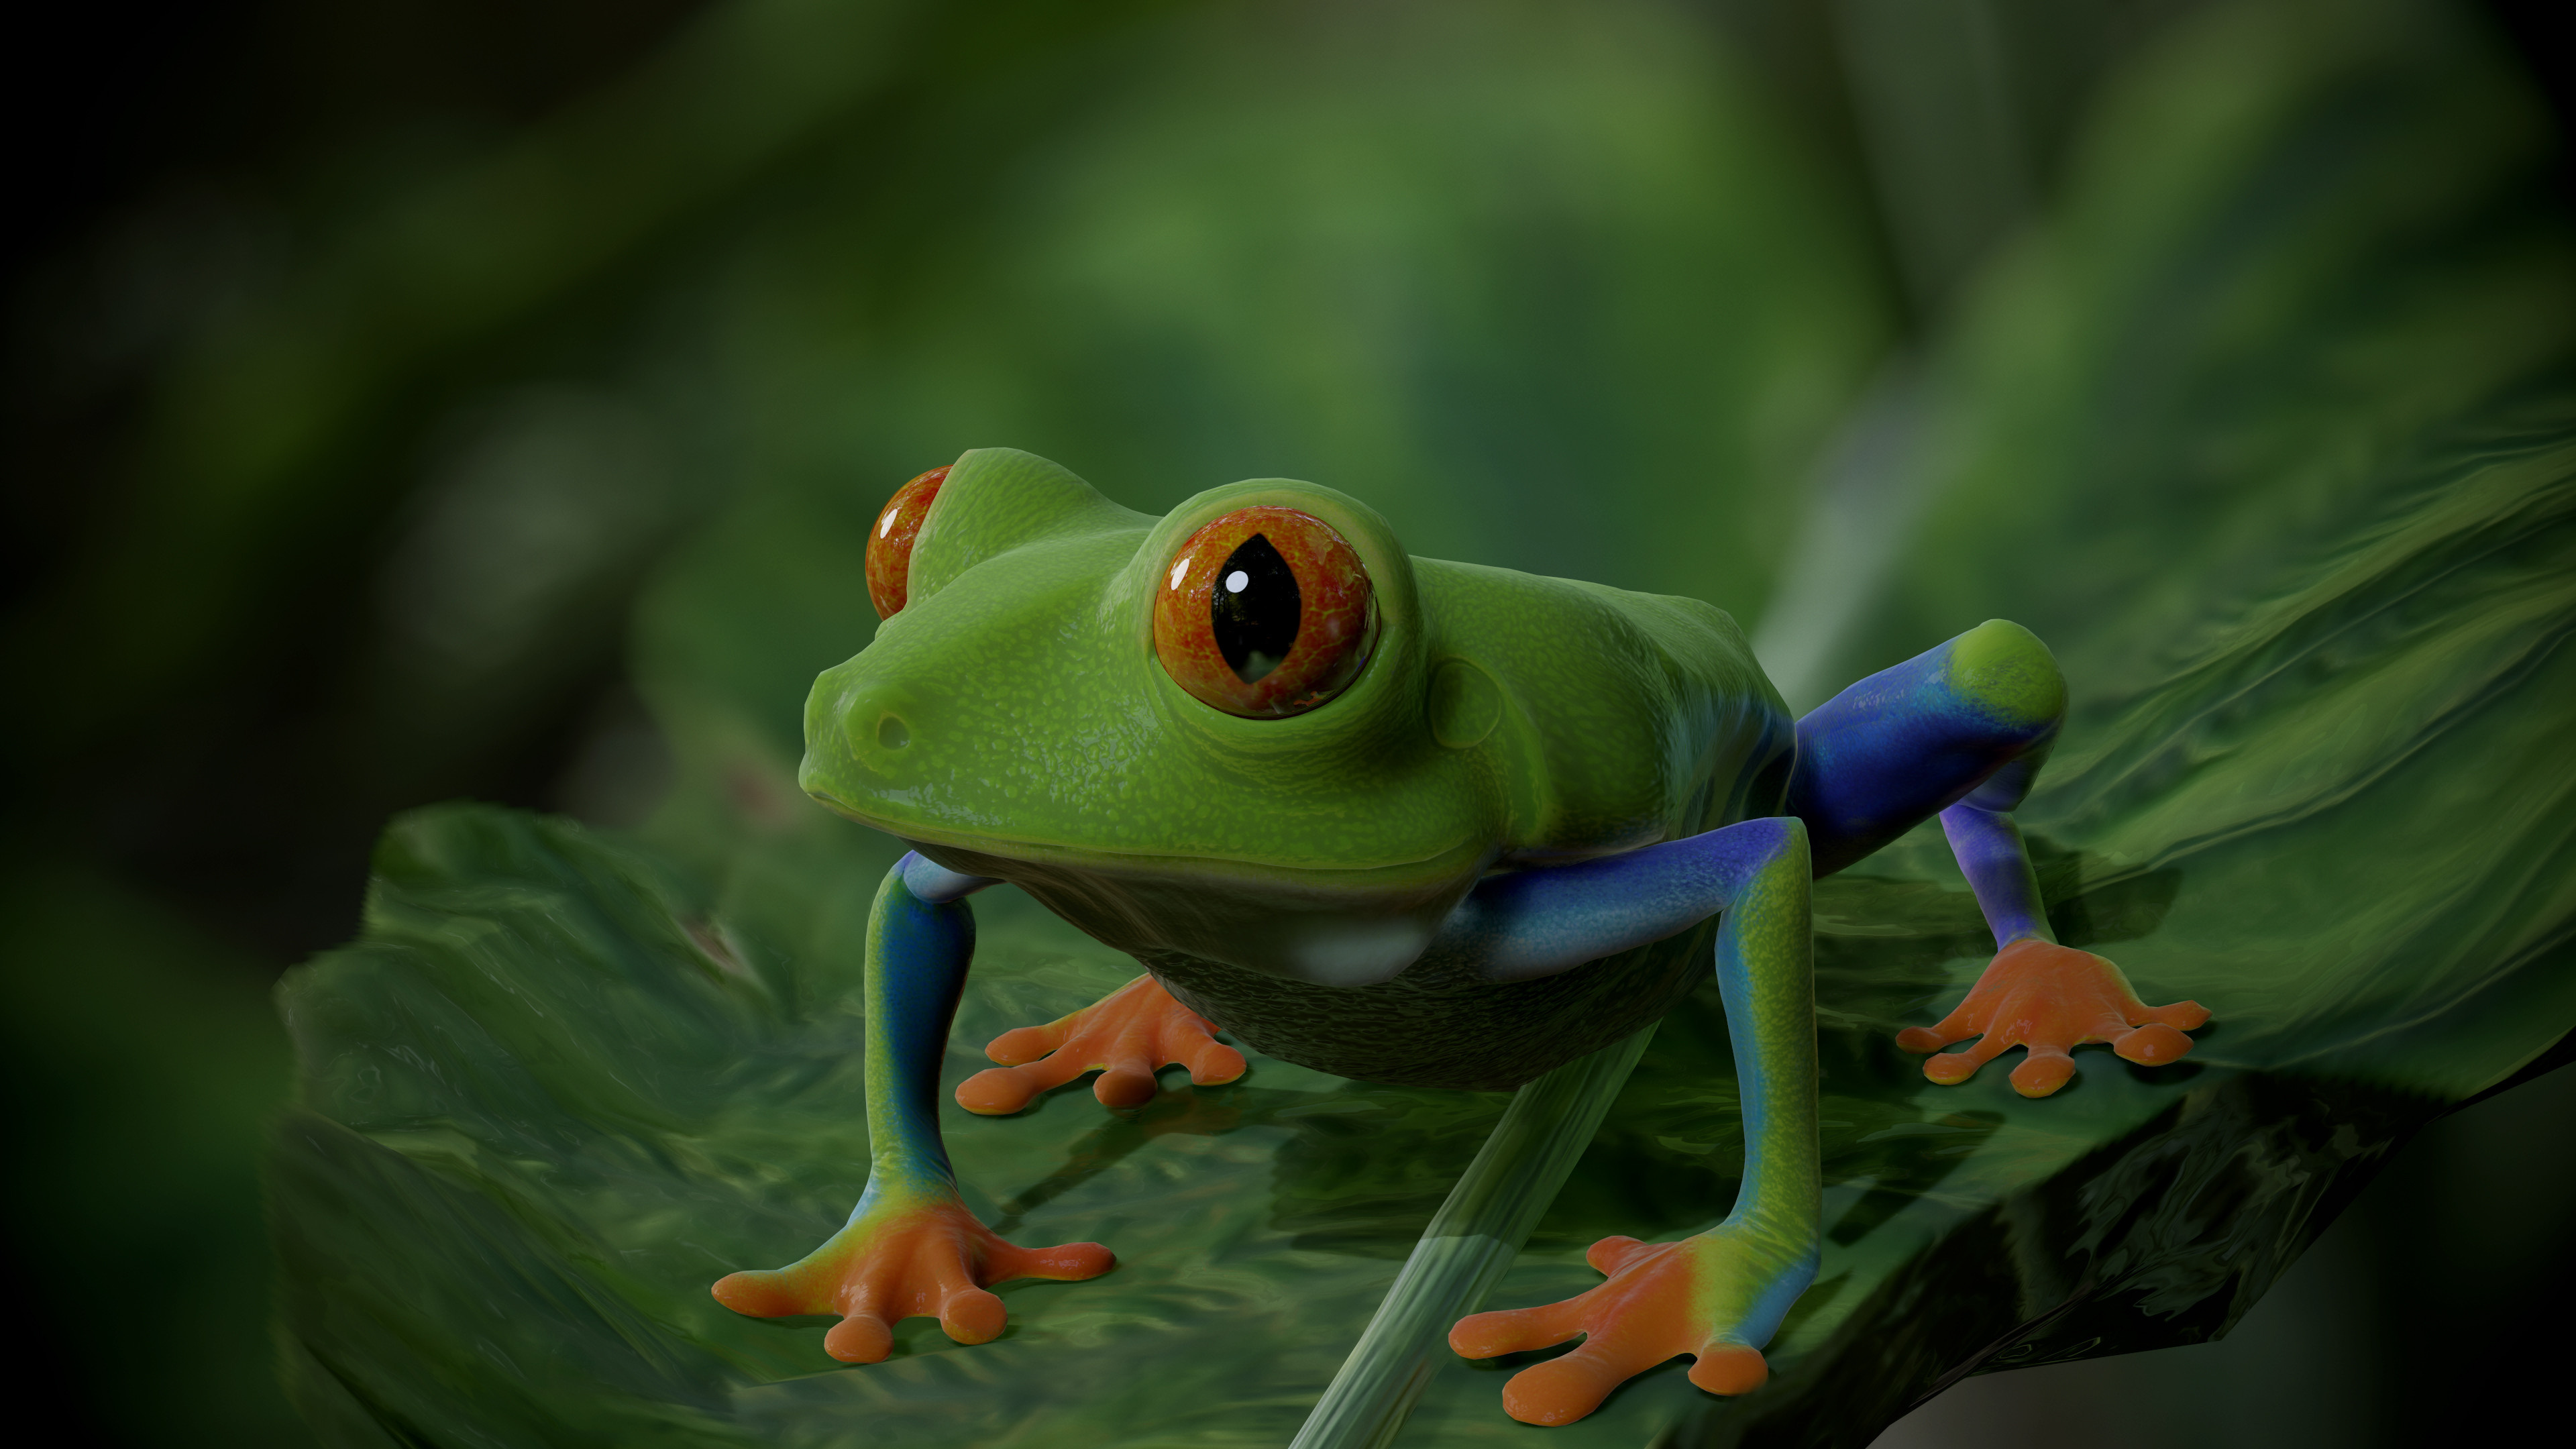 Artstation's wonders, Red Eye Tree Frog, CG artists' prowess, Creative amphibian, 3840x2160 4K Desktop